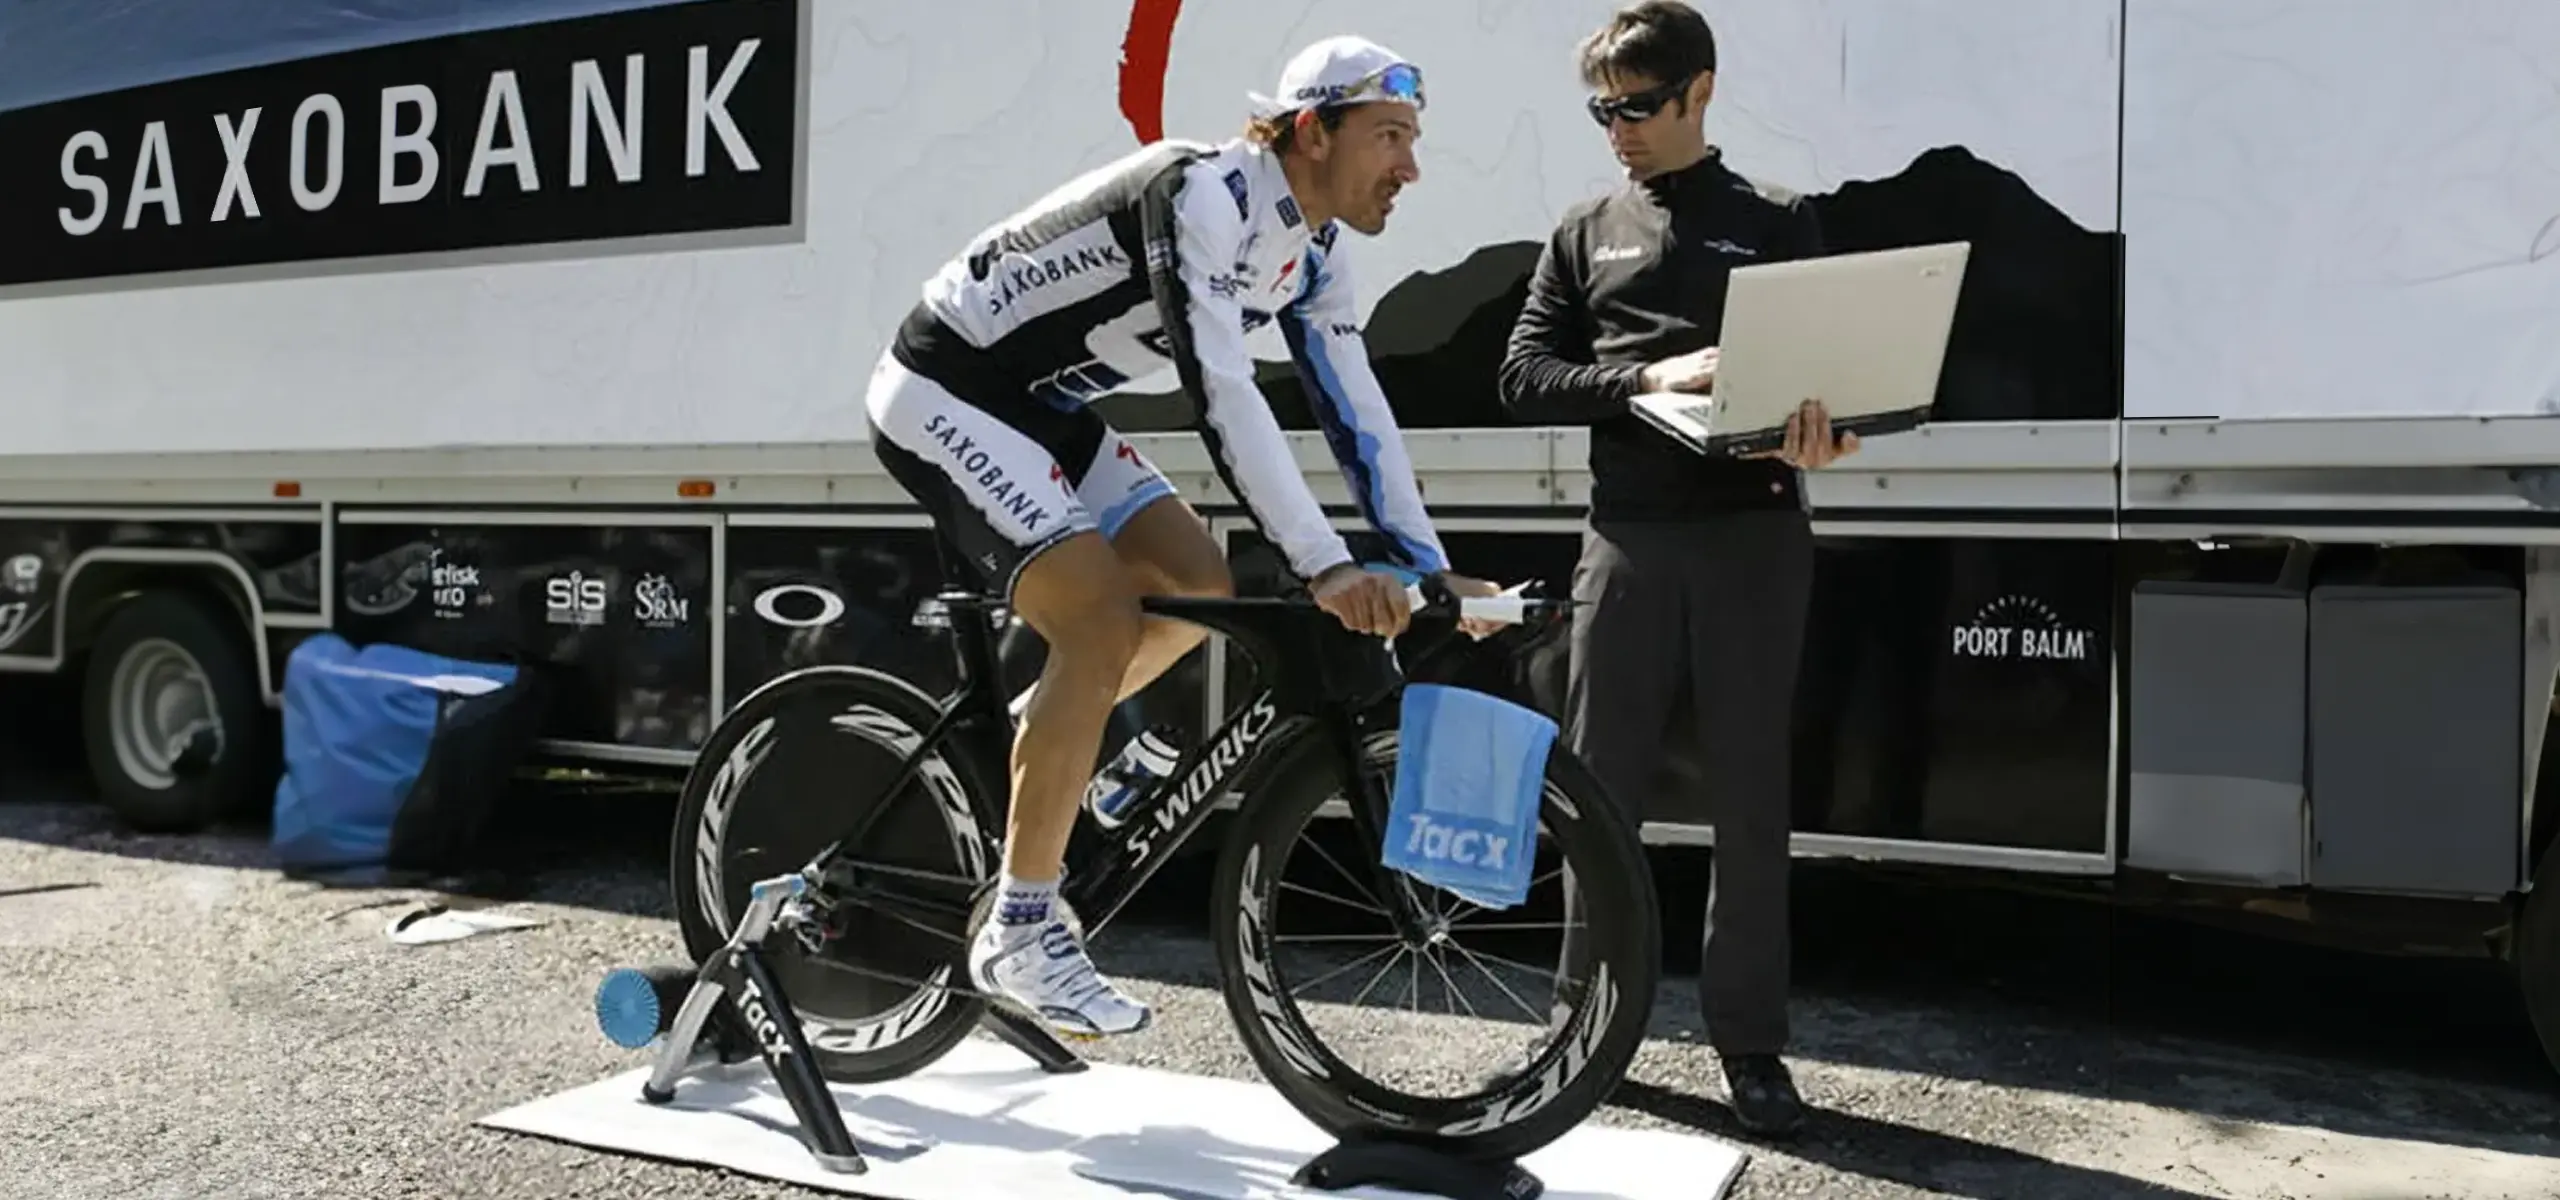 Fabian Cancellara Tacx trainer design by Joanna Boothman npk